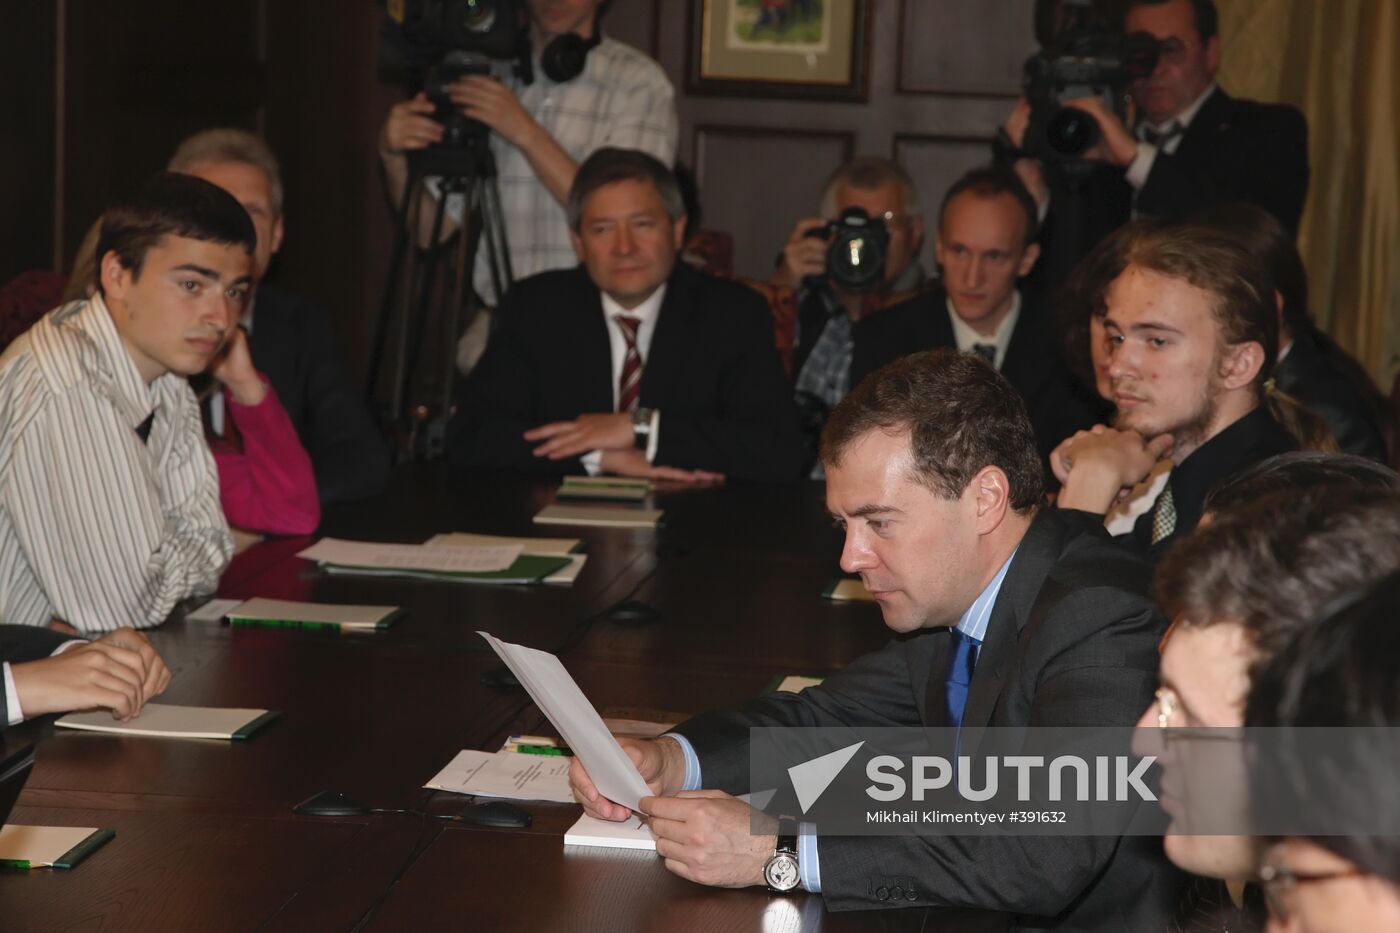 President Medvedev held a number of meetings on May 6, 2009.